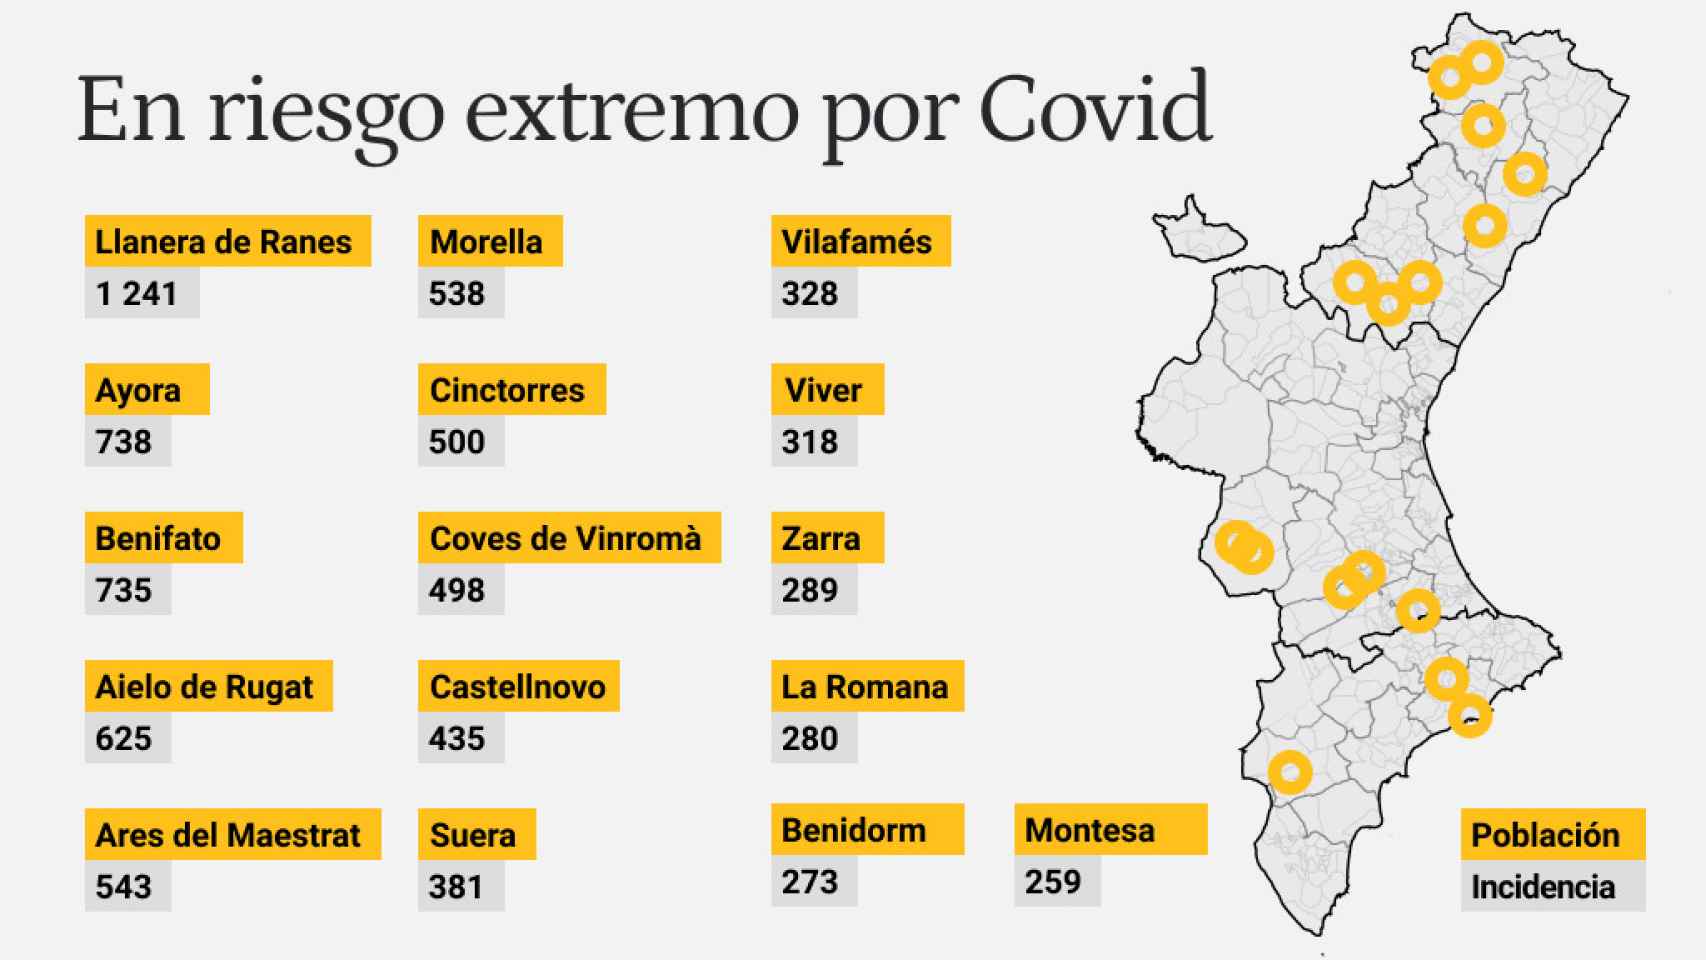 Estas localidades superan una incidencia acumulada a 14 días de 250 casos por cien mil habitantes.